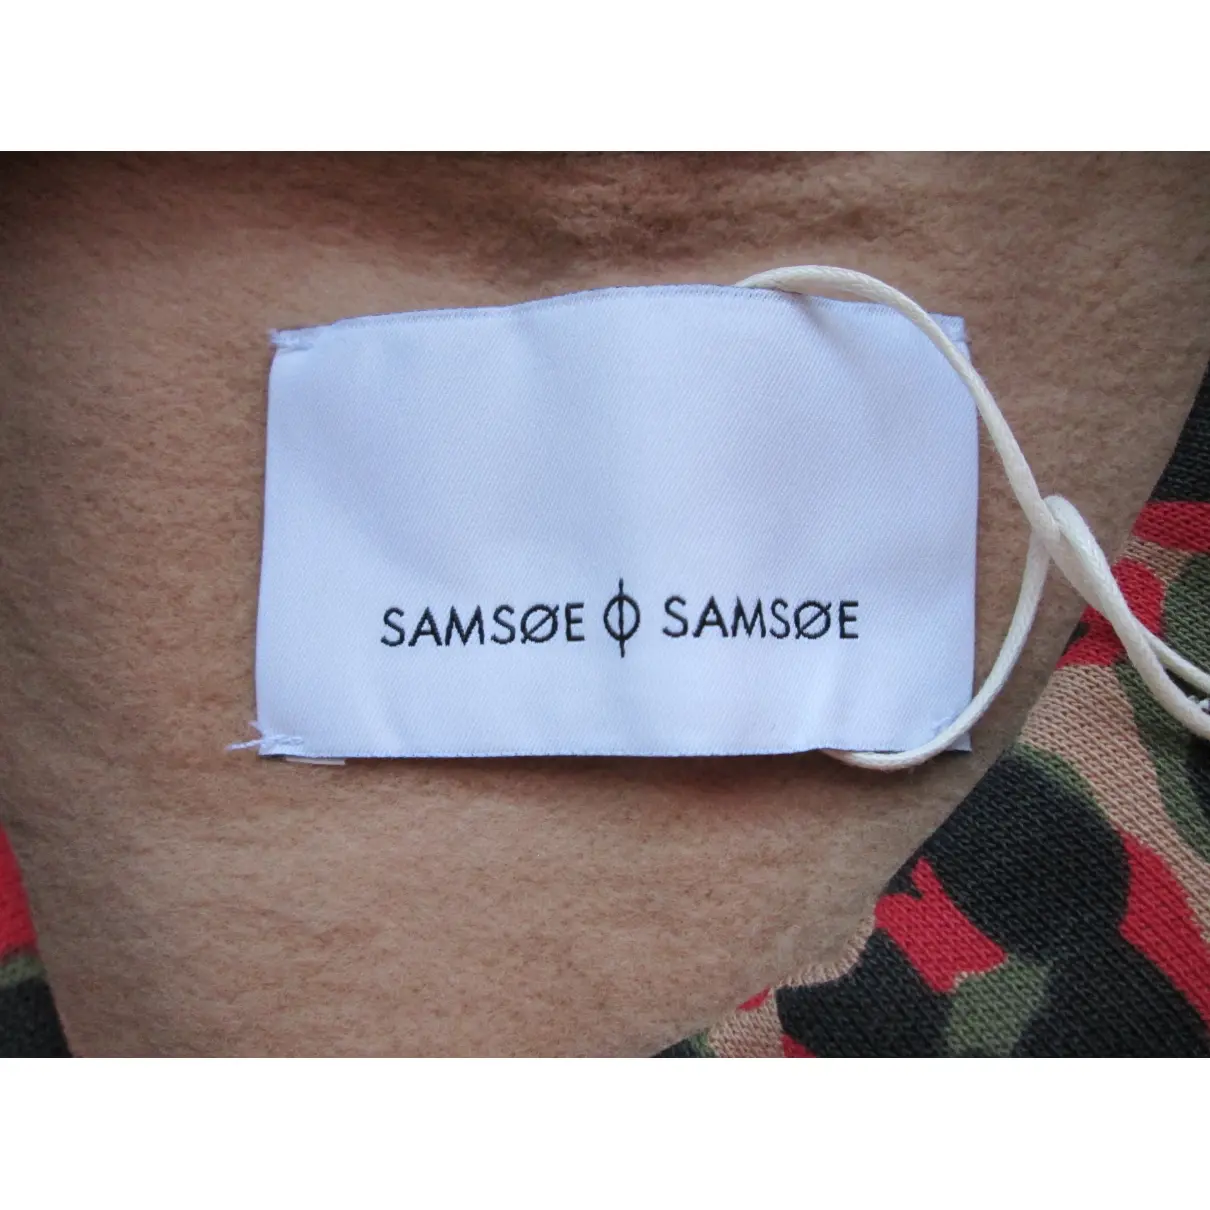 Buy Samsoe & Samsoe Top online